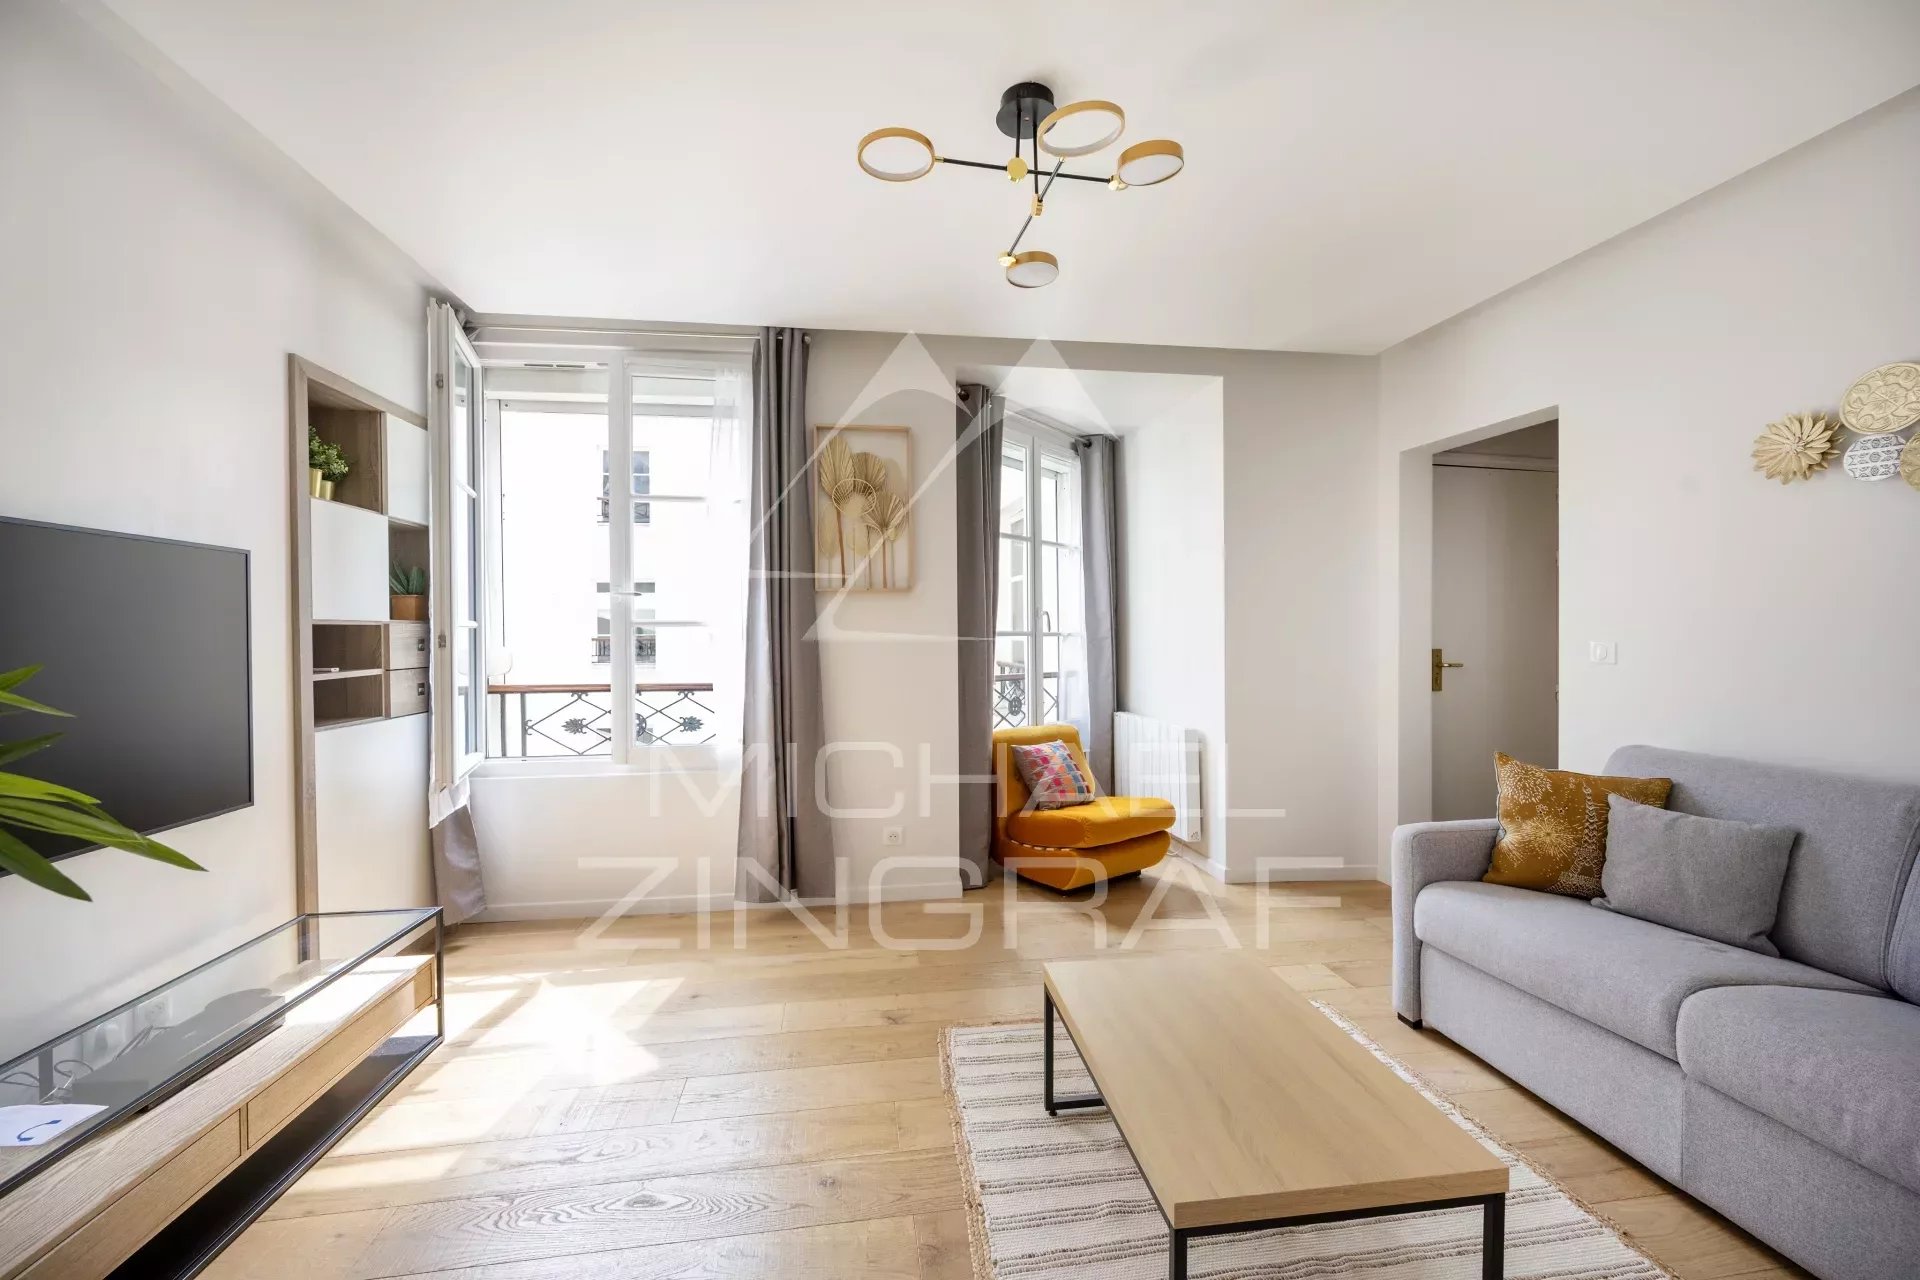 Vente appartement - Marais - entièrement rénové